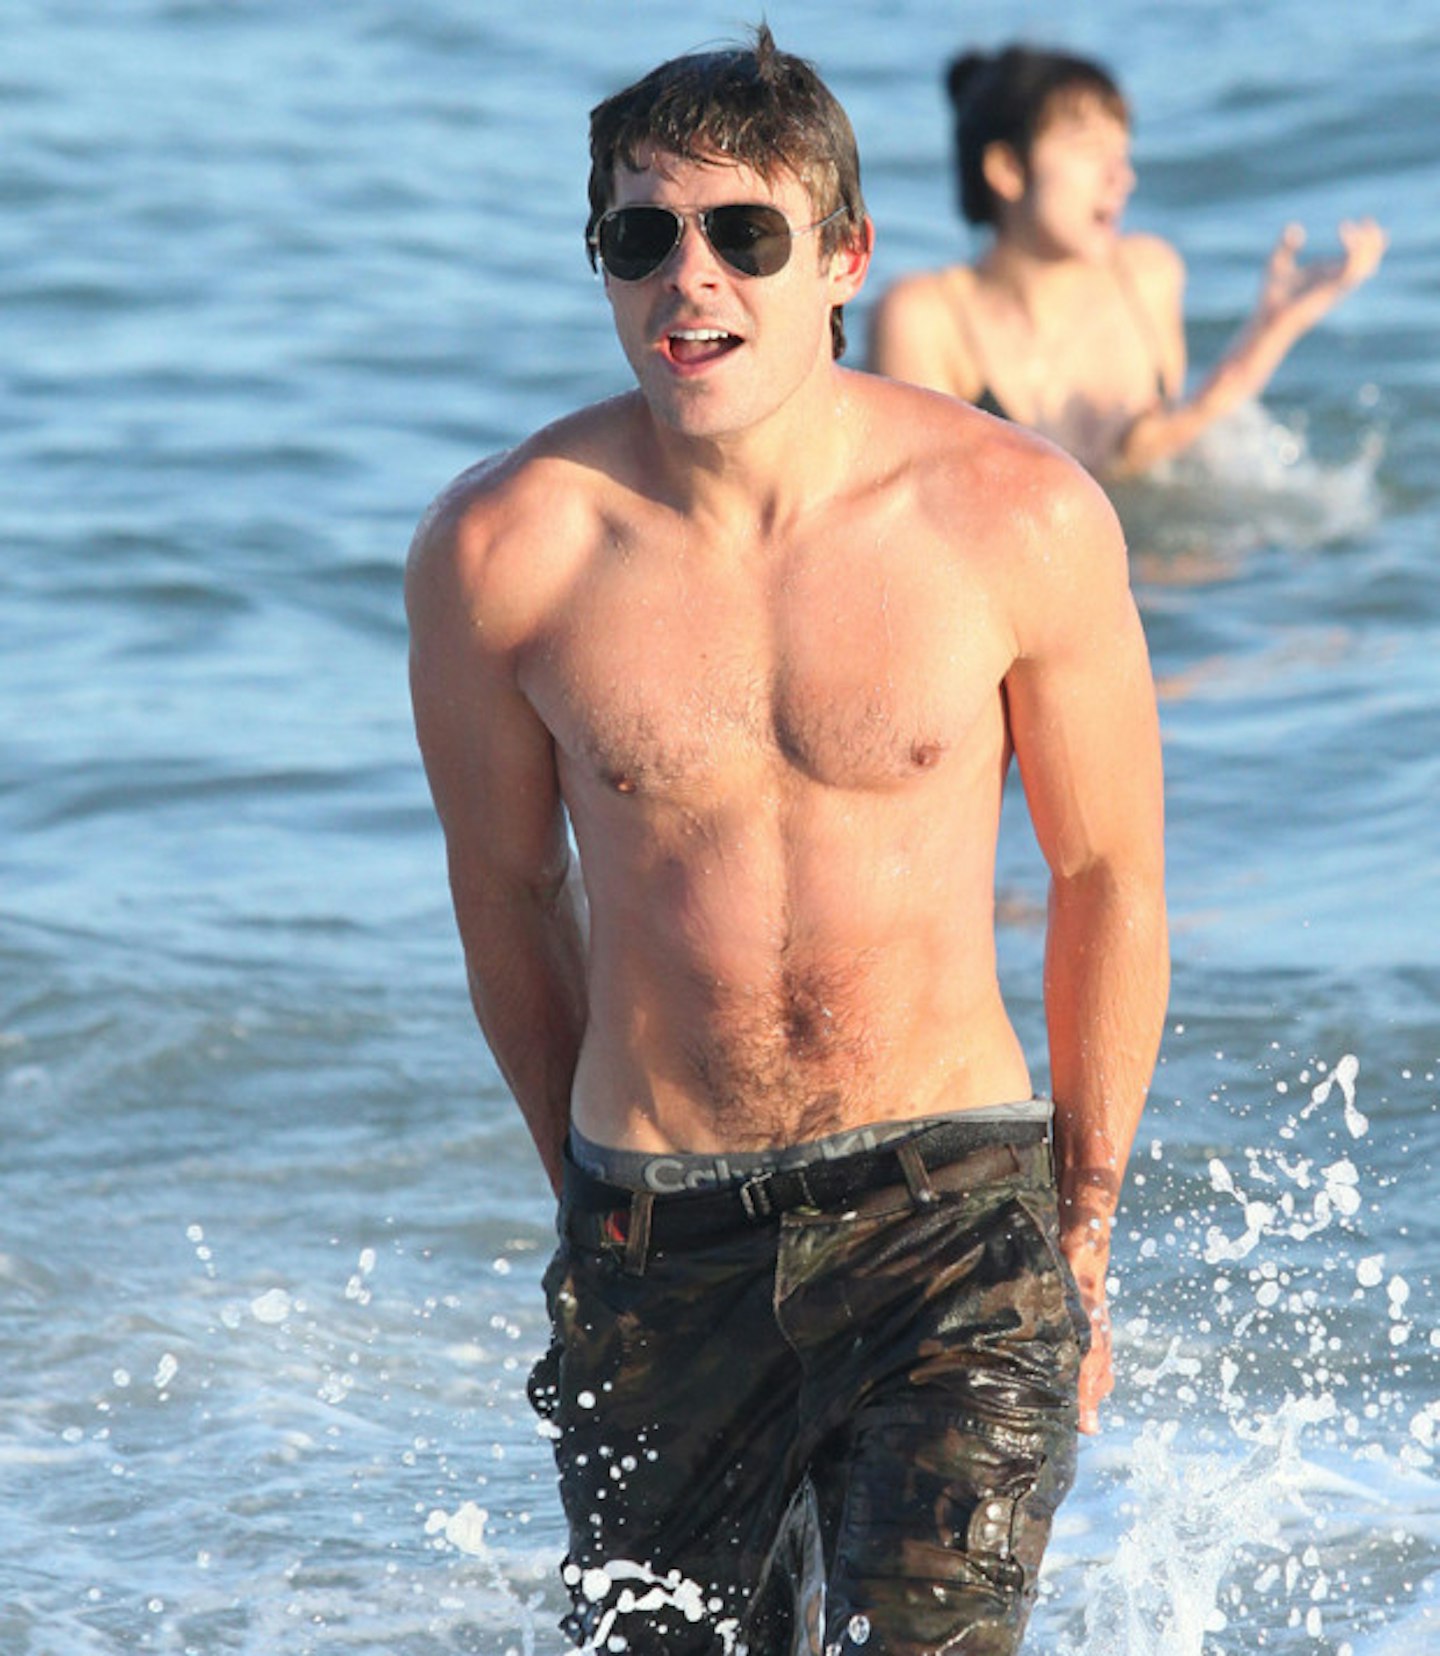 Zac Efron frolicking in the ocean